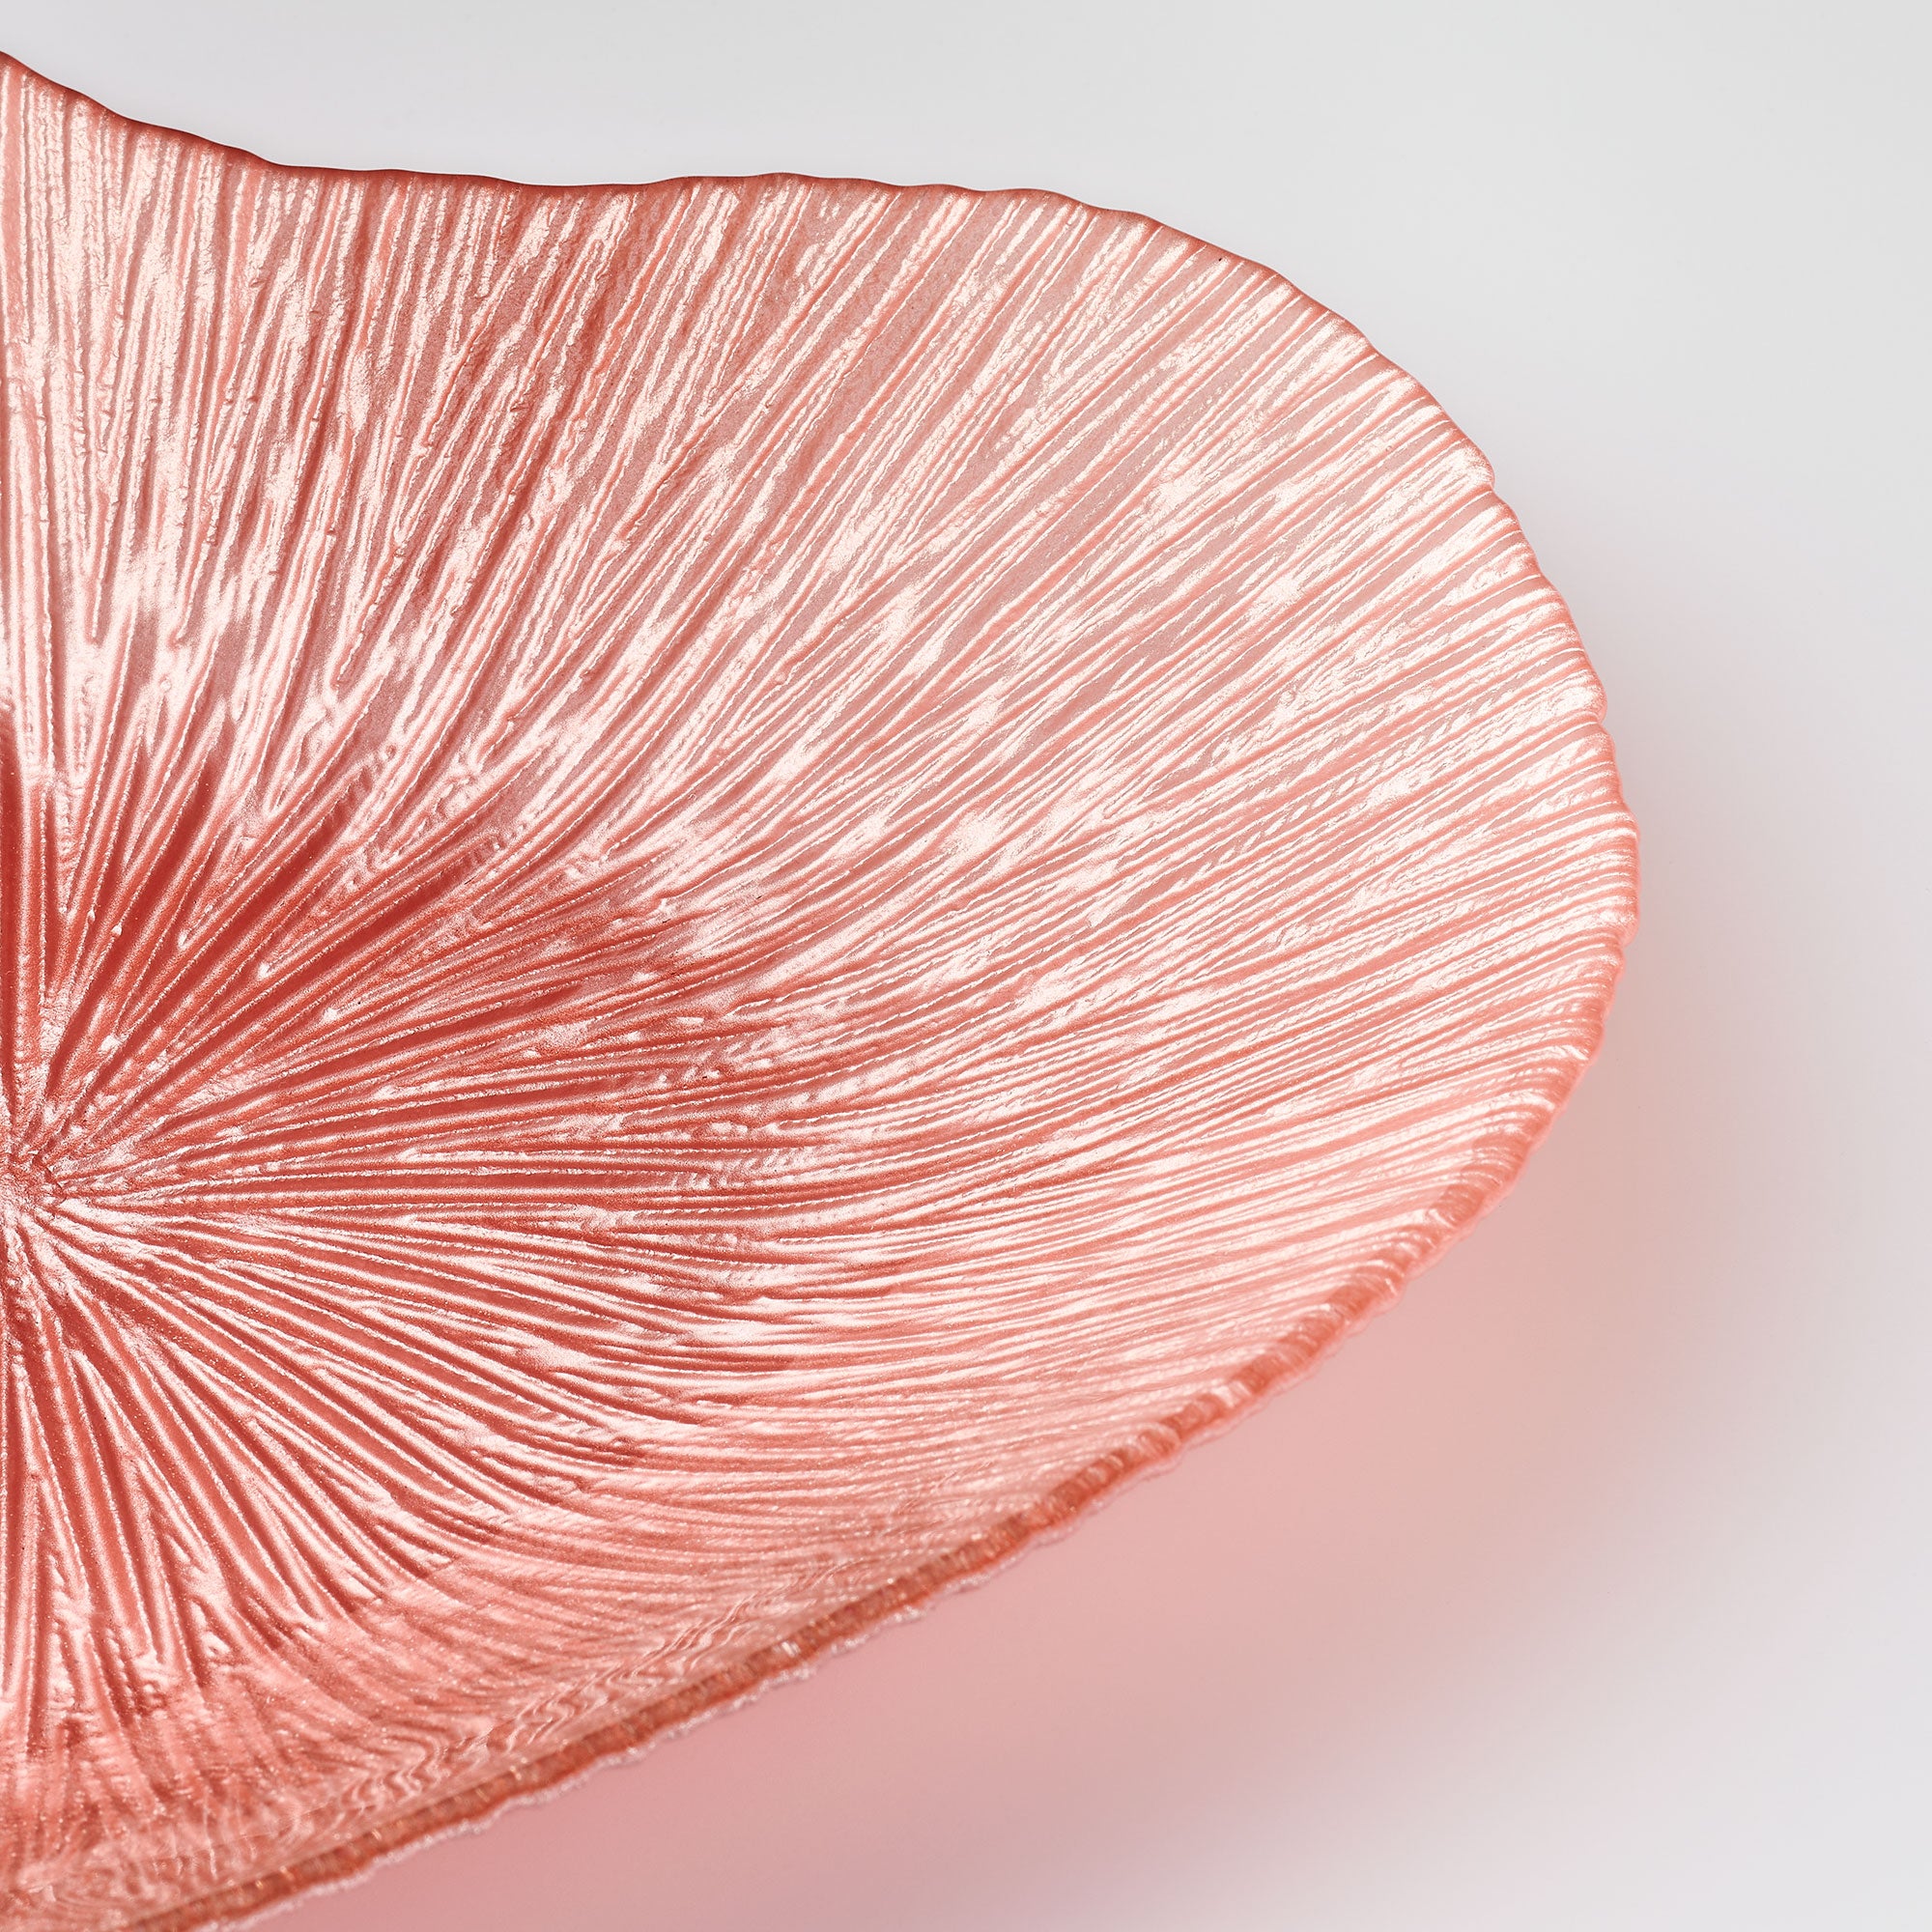 Glass Bowl - Heart Design - Pink - Aspire Art Glass